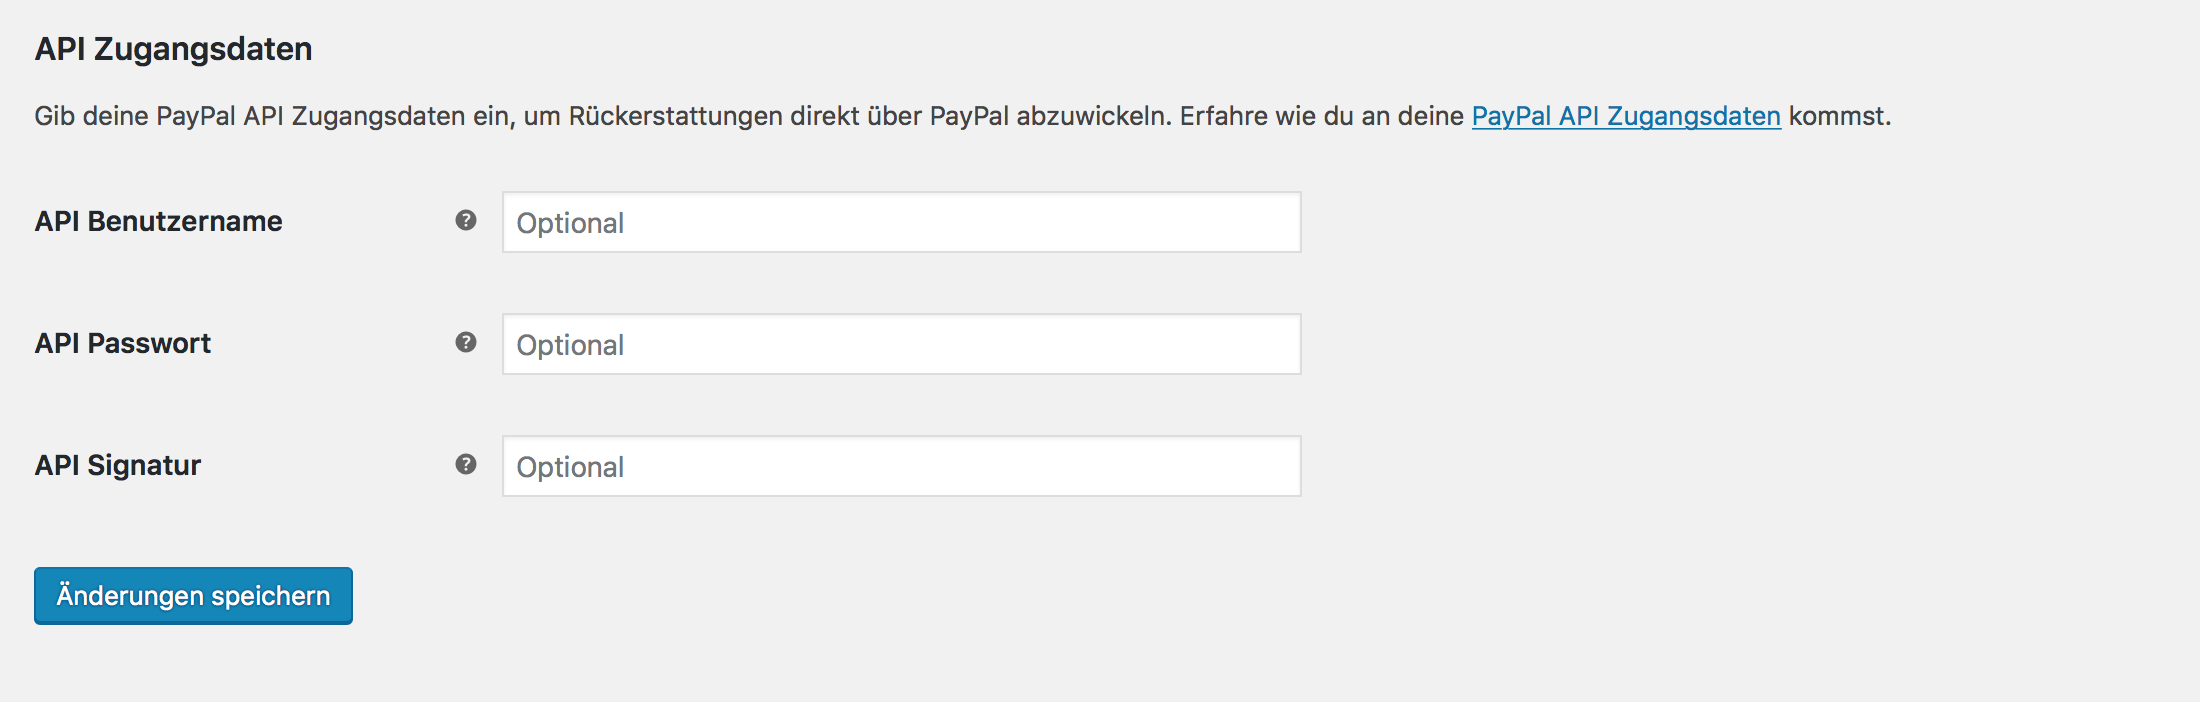 PayPal API Zugangsdaten eintragen